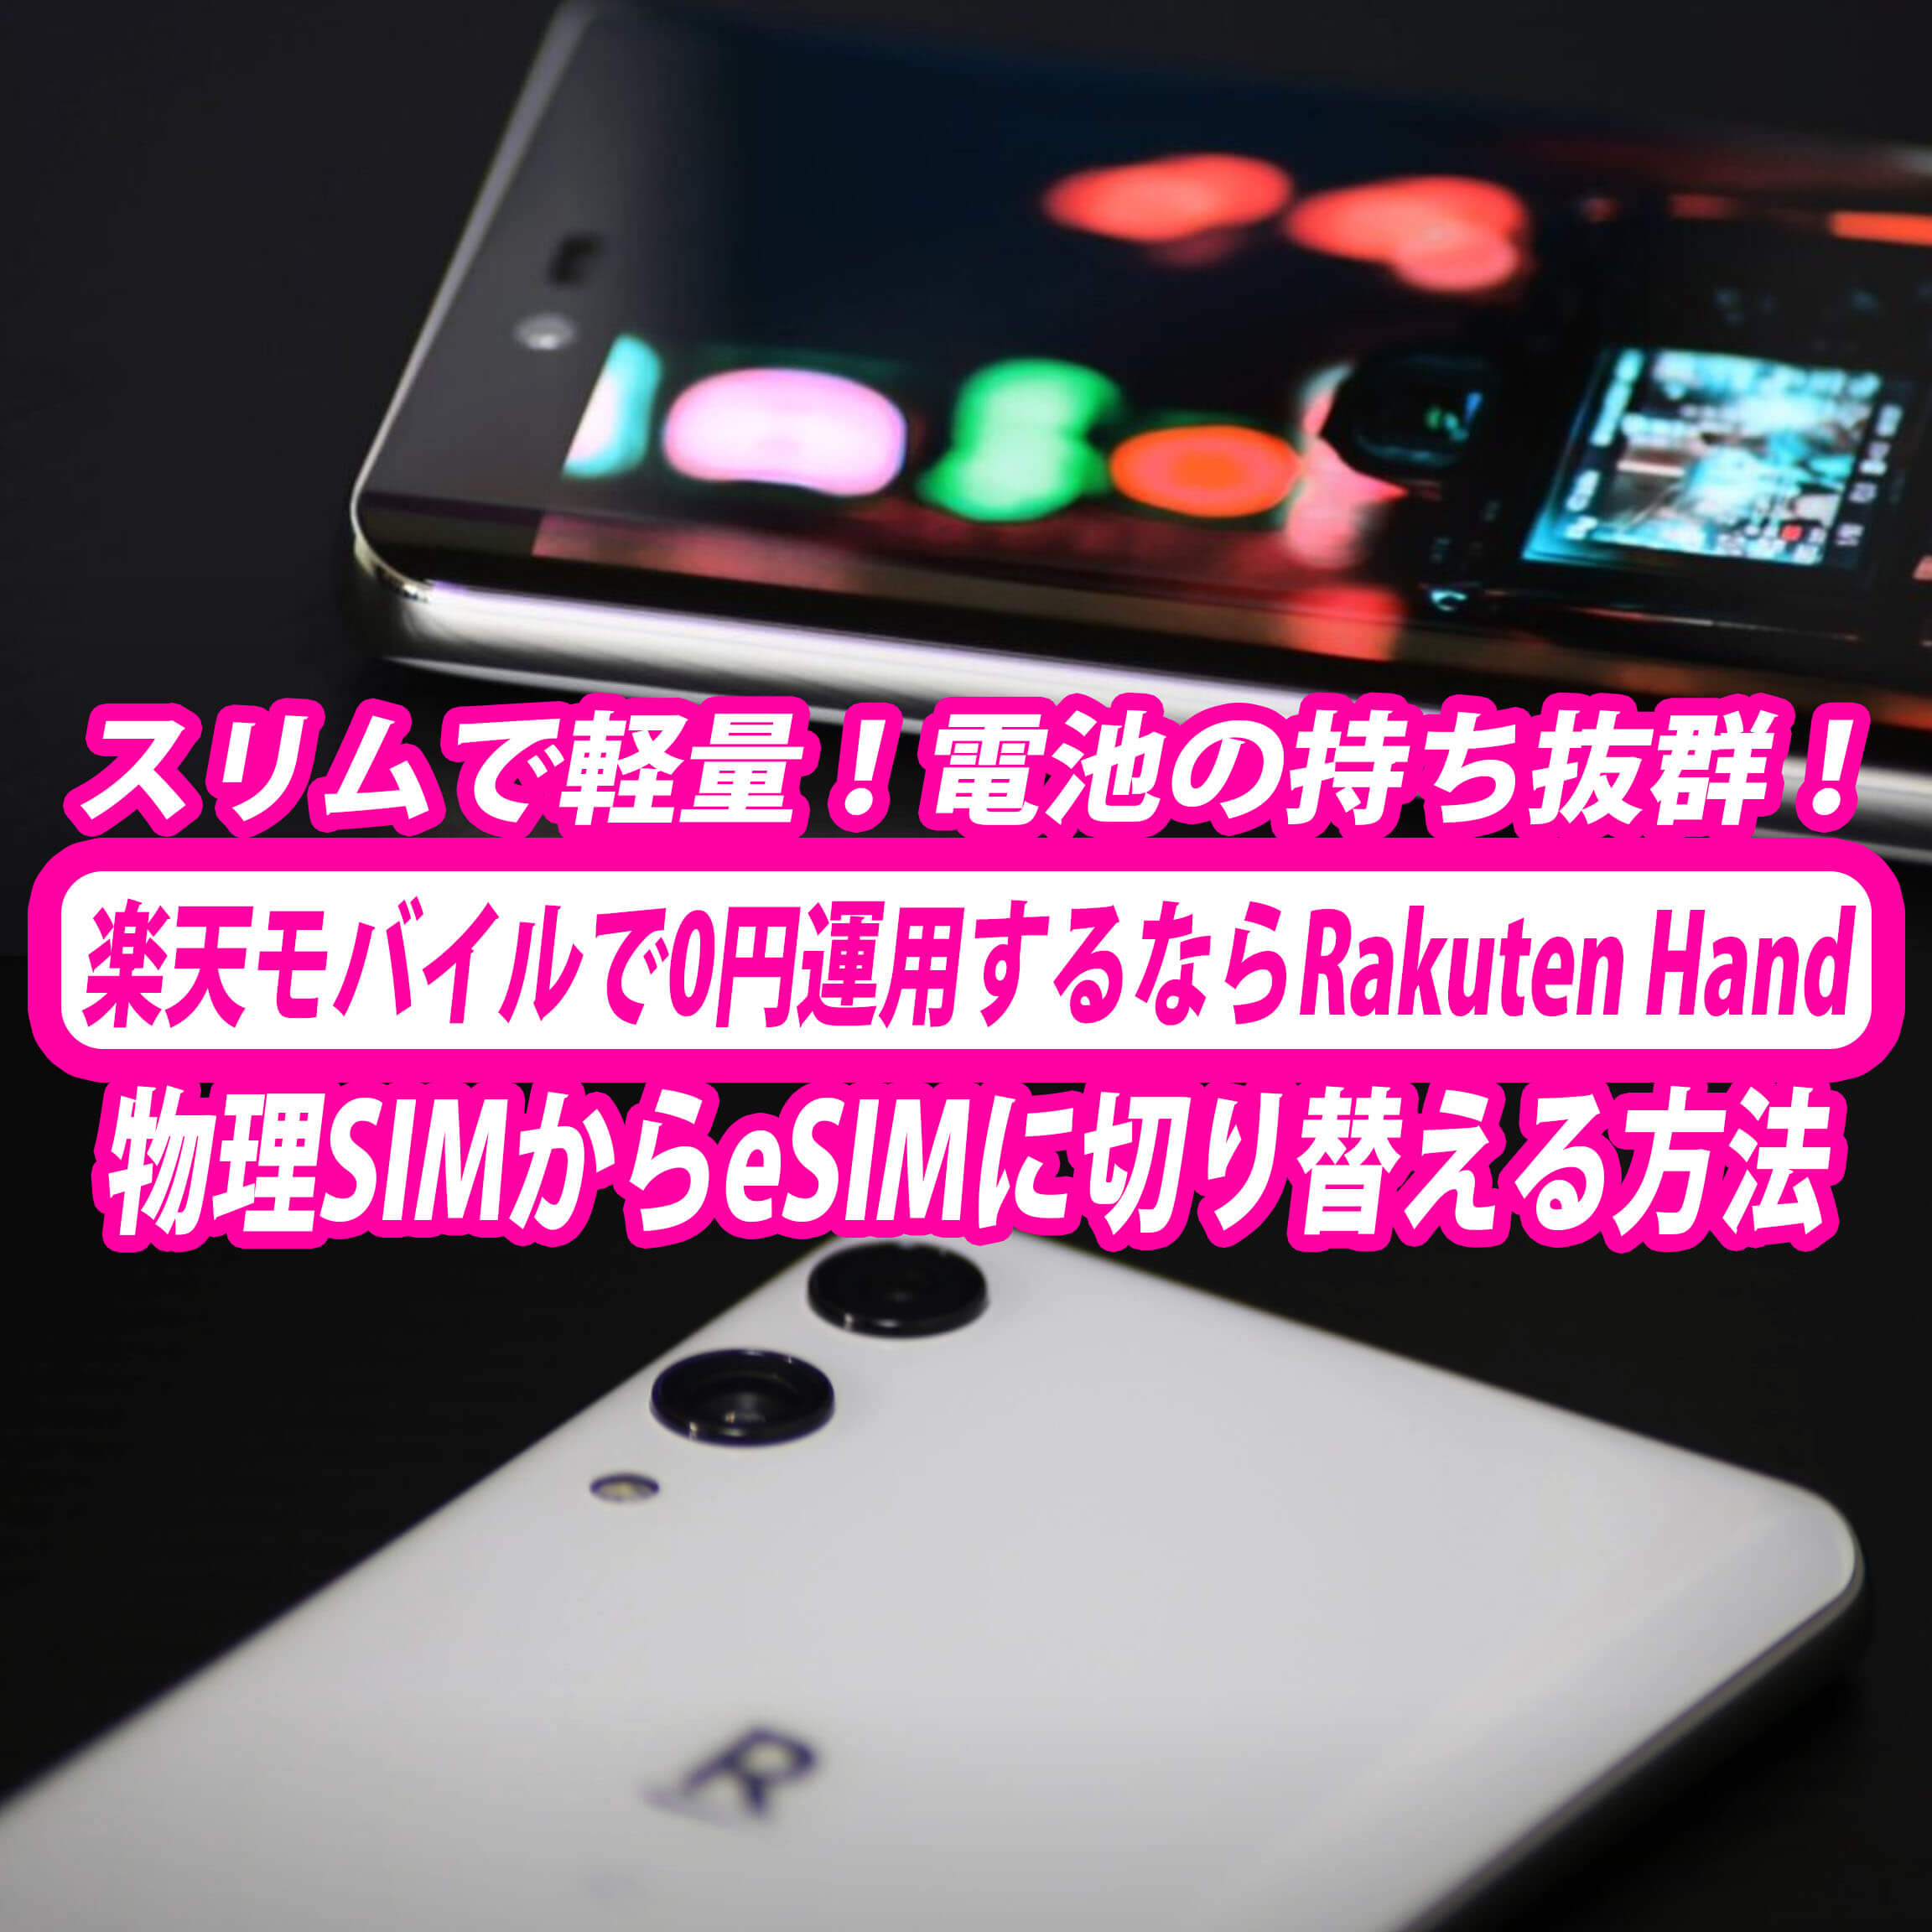 楽天モバイルを0円運用するならRakuten Handがベストな理由。物理SIMを 